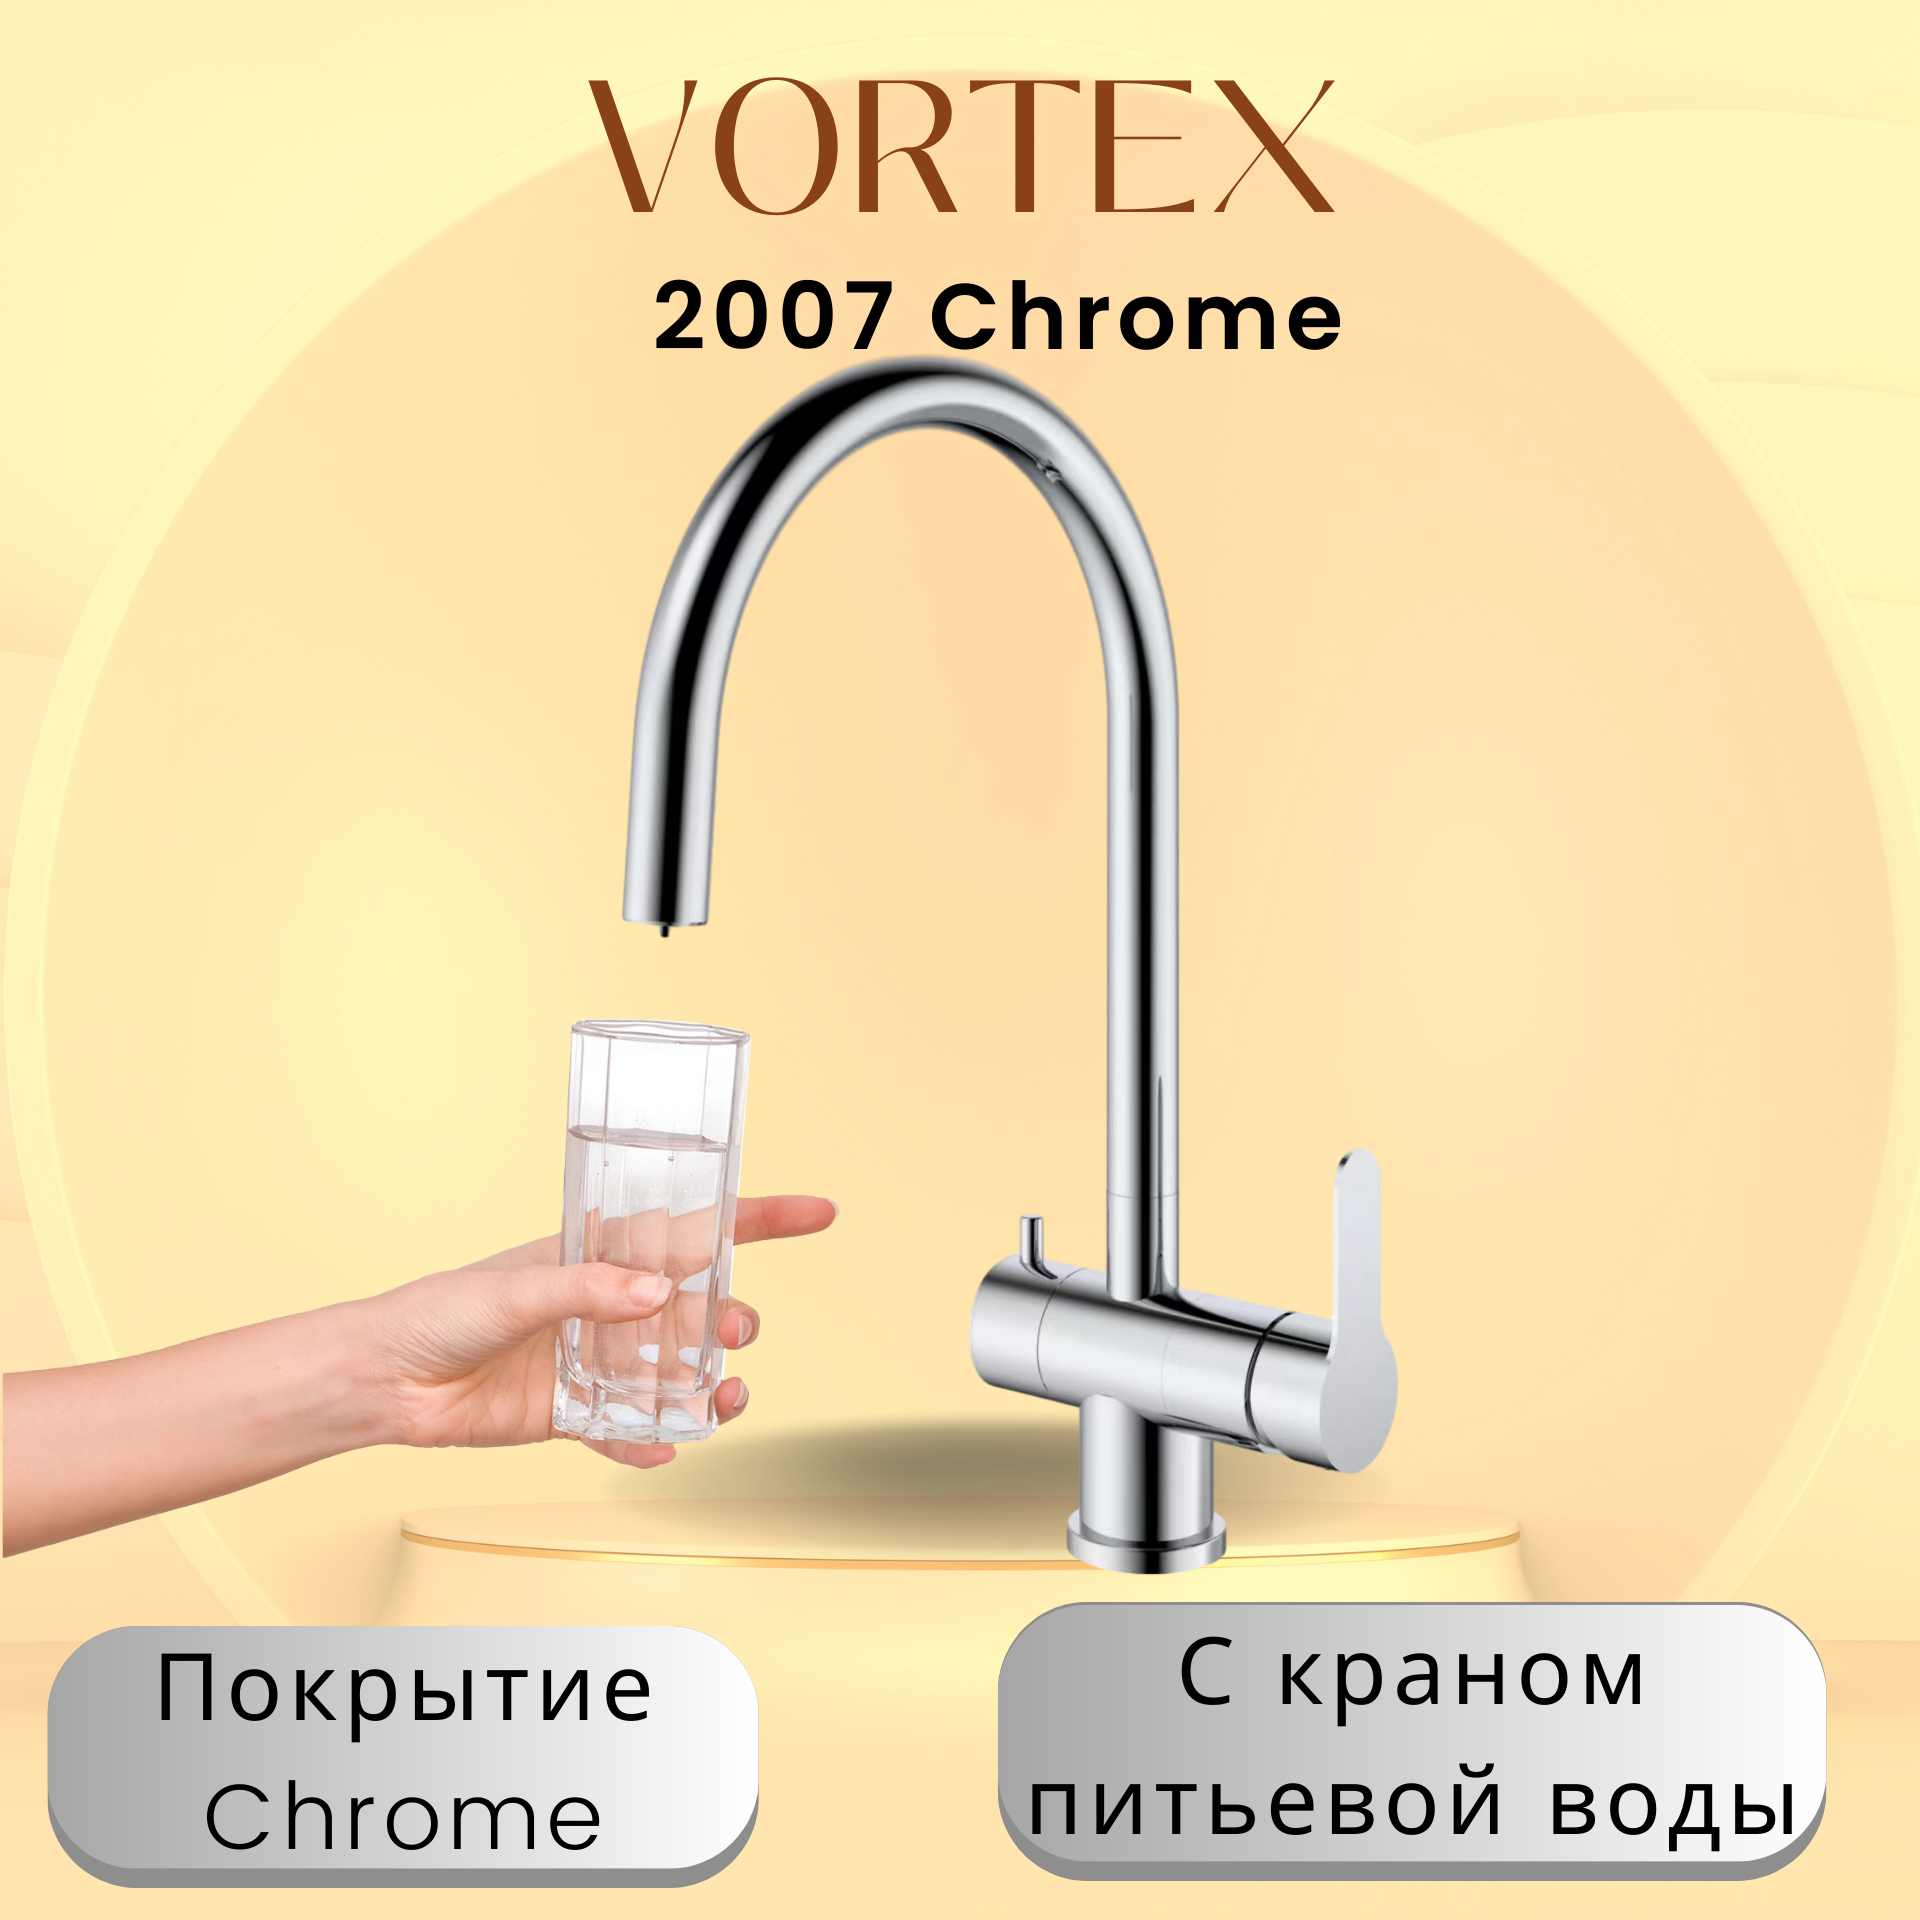 Кухонный смеситель с краном питьевой воды Vortex VX-2007 Chrome кухонный смеситель с краном питьевой воды vortex vx 2007 chrome